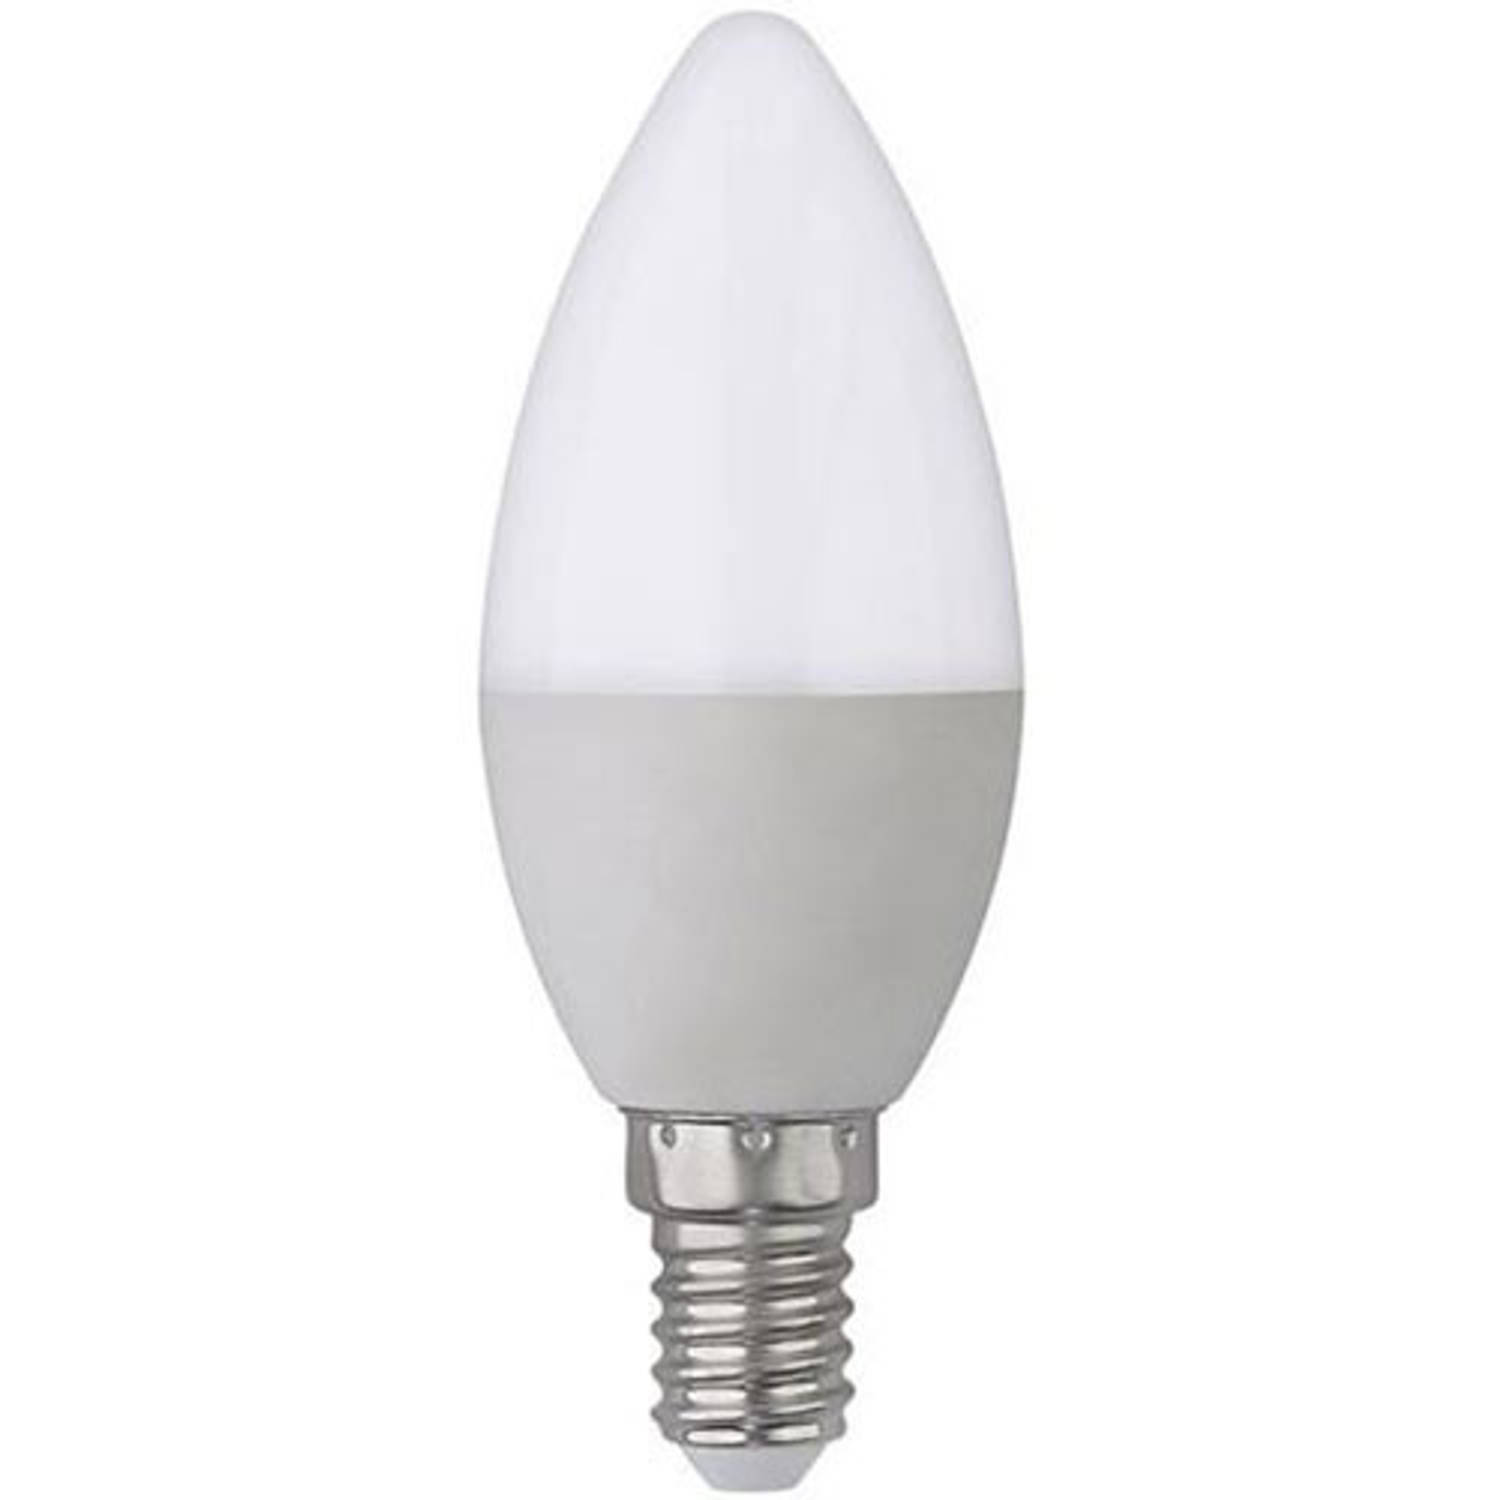 Zielig het winkelcentrum schotel LED Lamp - E14 Fitting - 4W - Helder/Koud Wit 6400K | Blokker